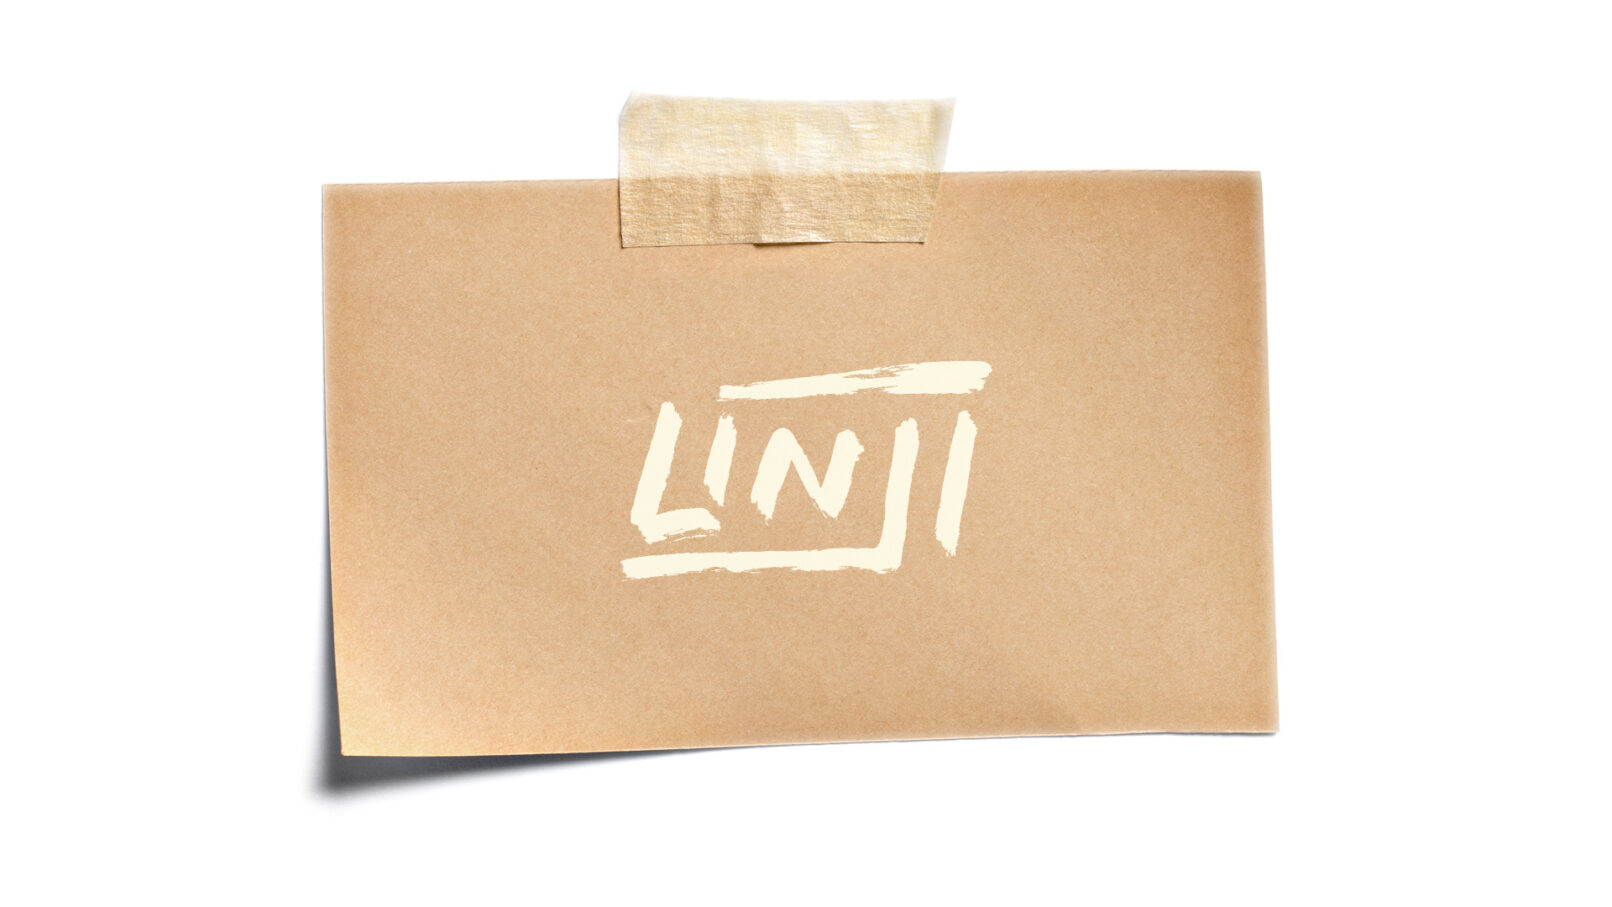 linji-feature